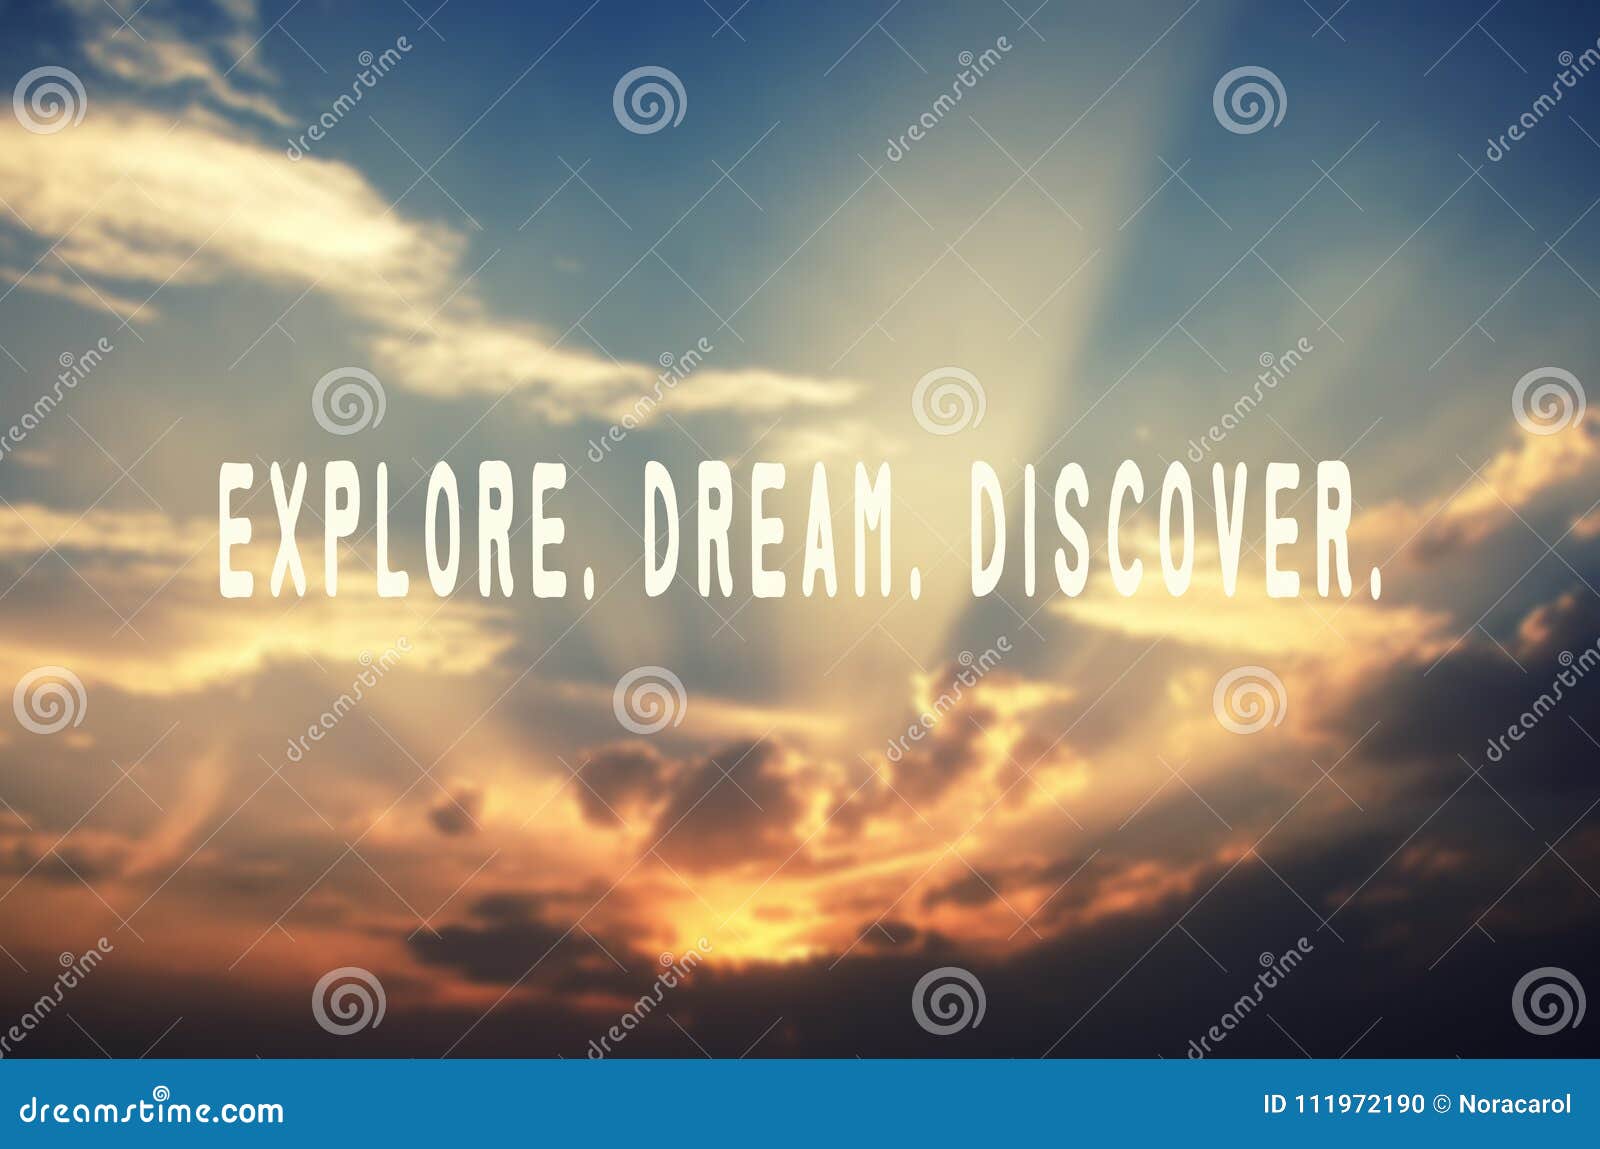 explore, dream, discover